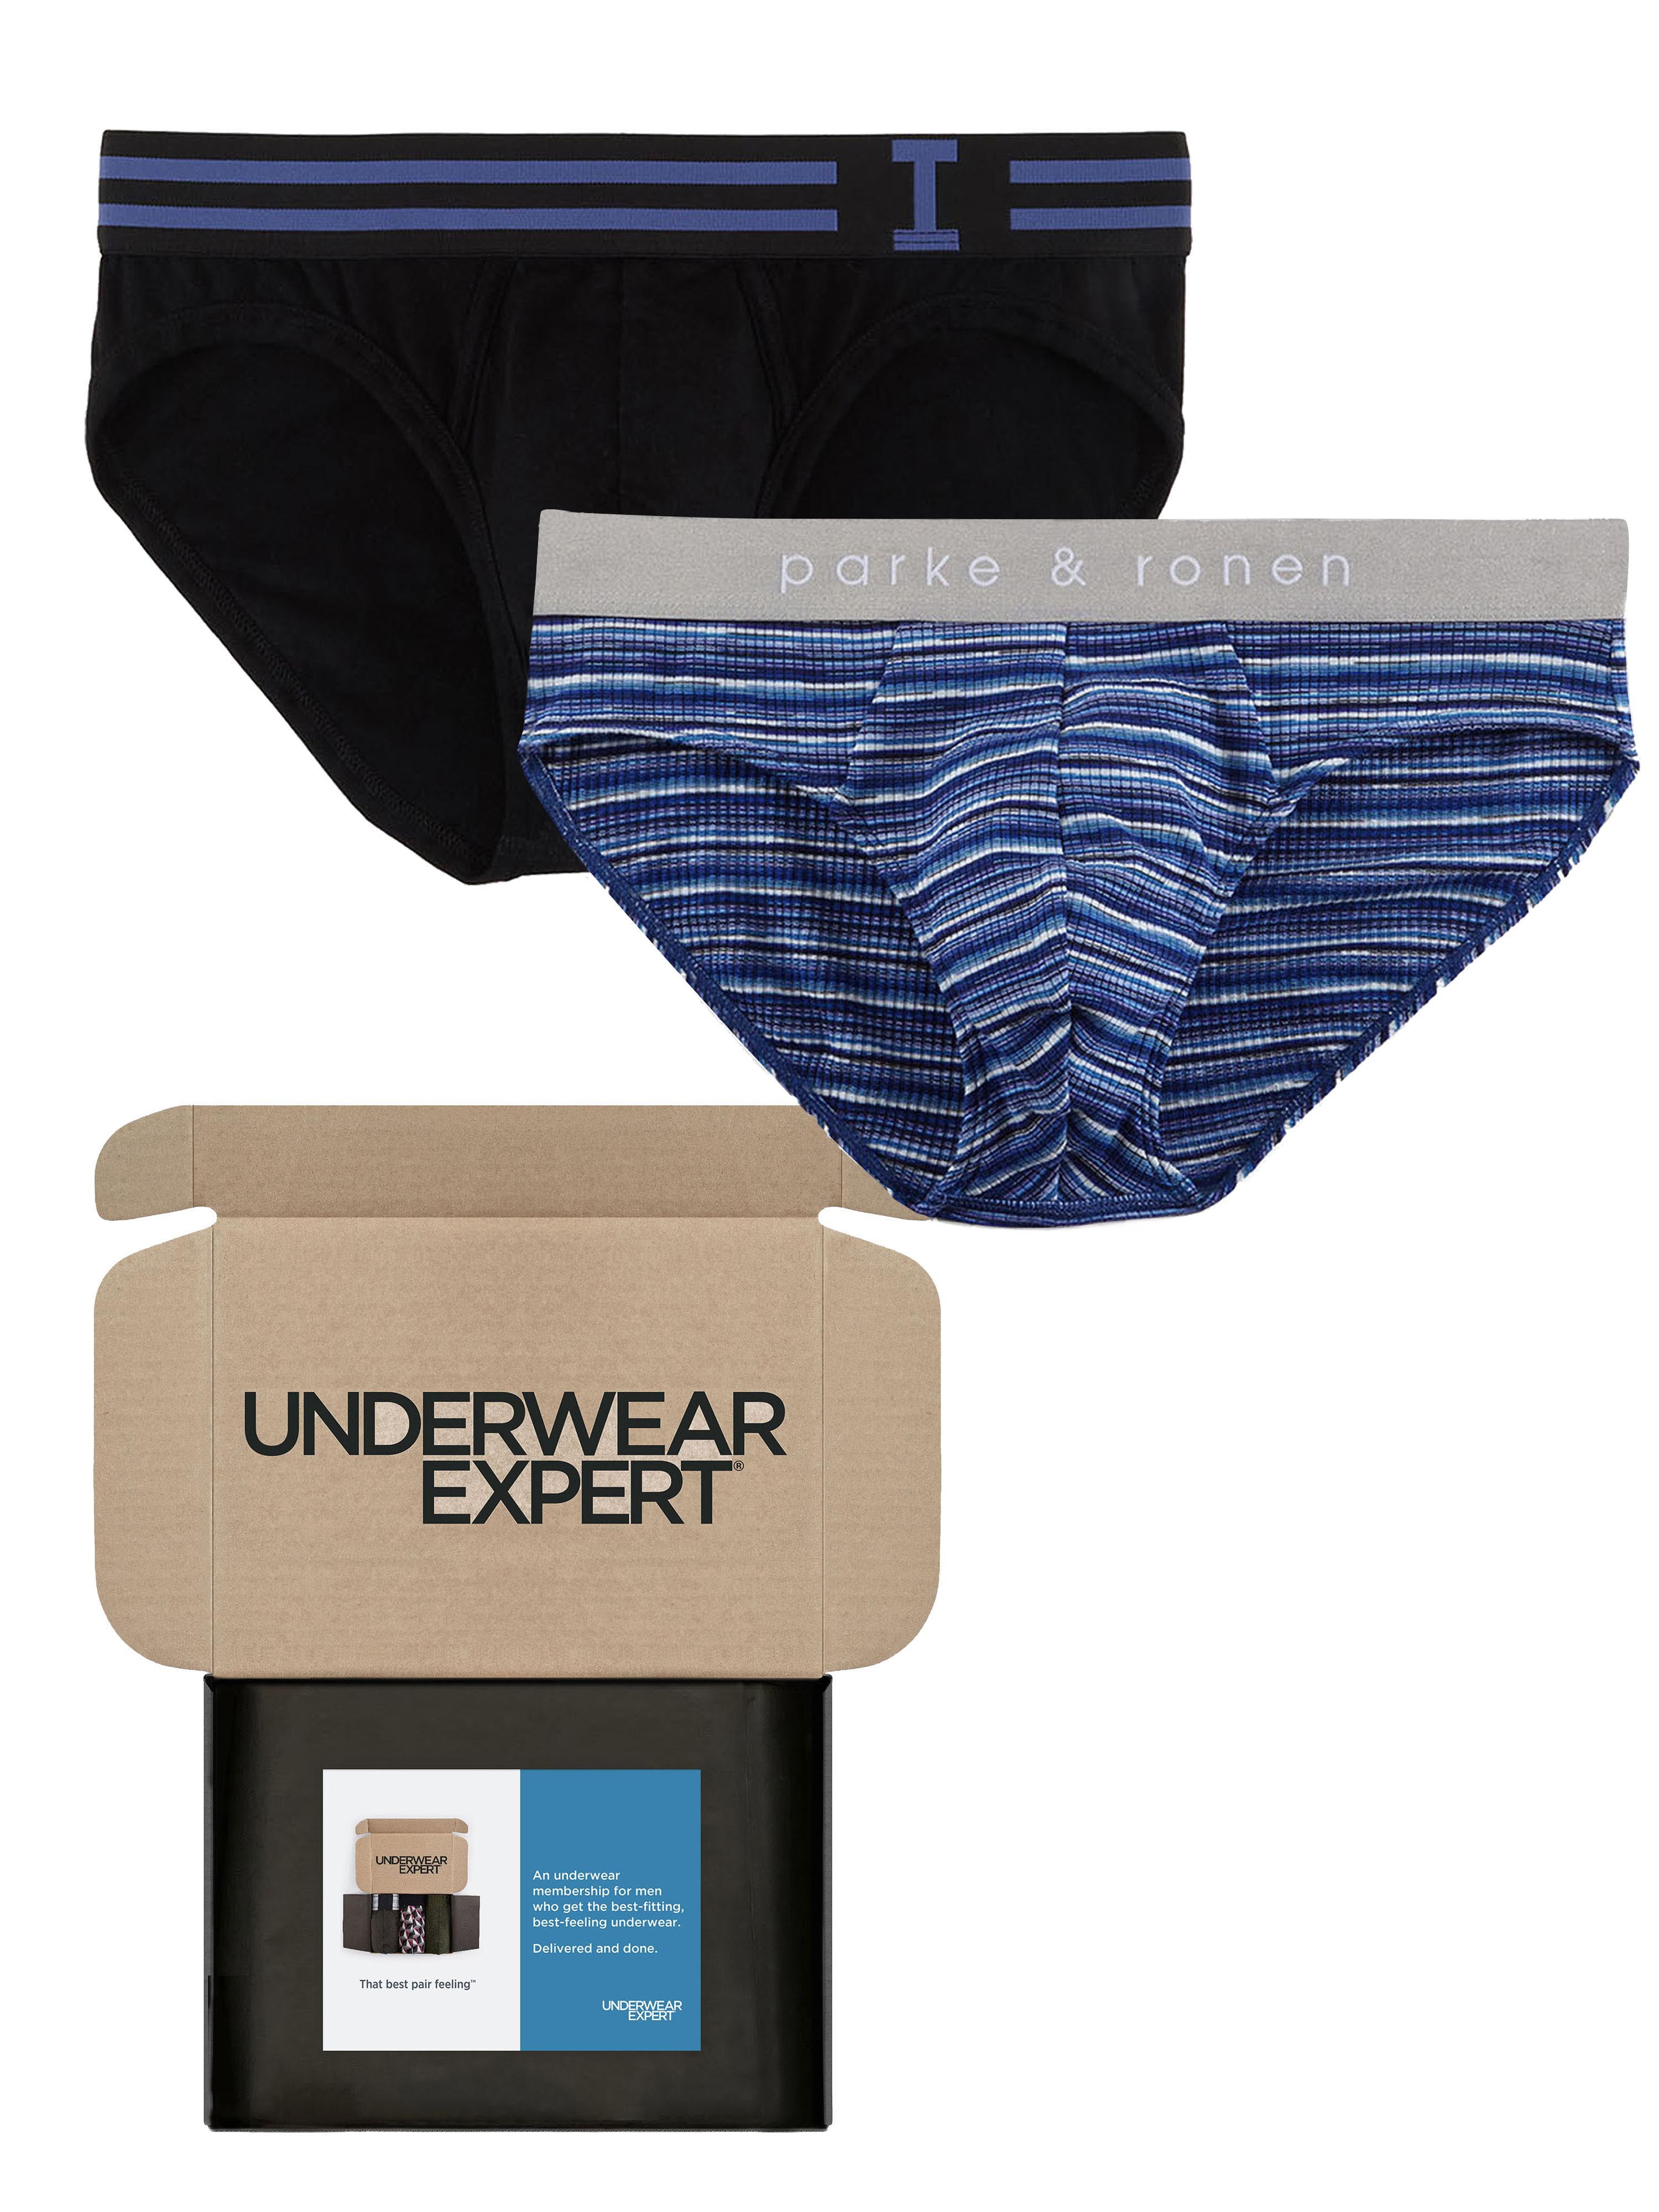 Unsimply Stitched Black Boxer Brief - Underwear Expert